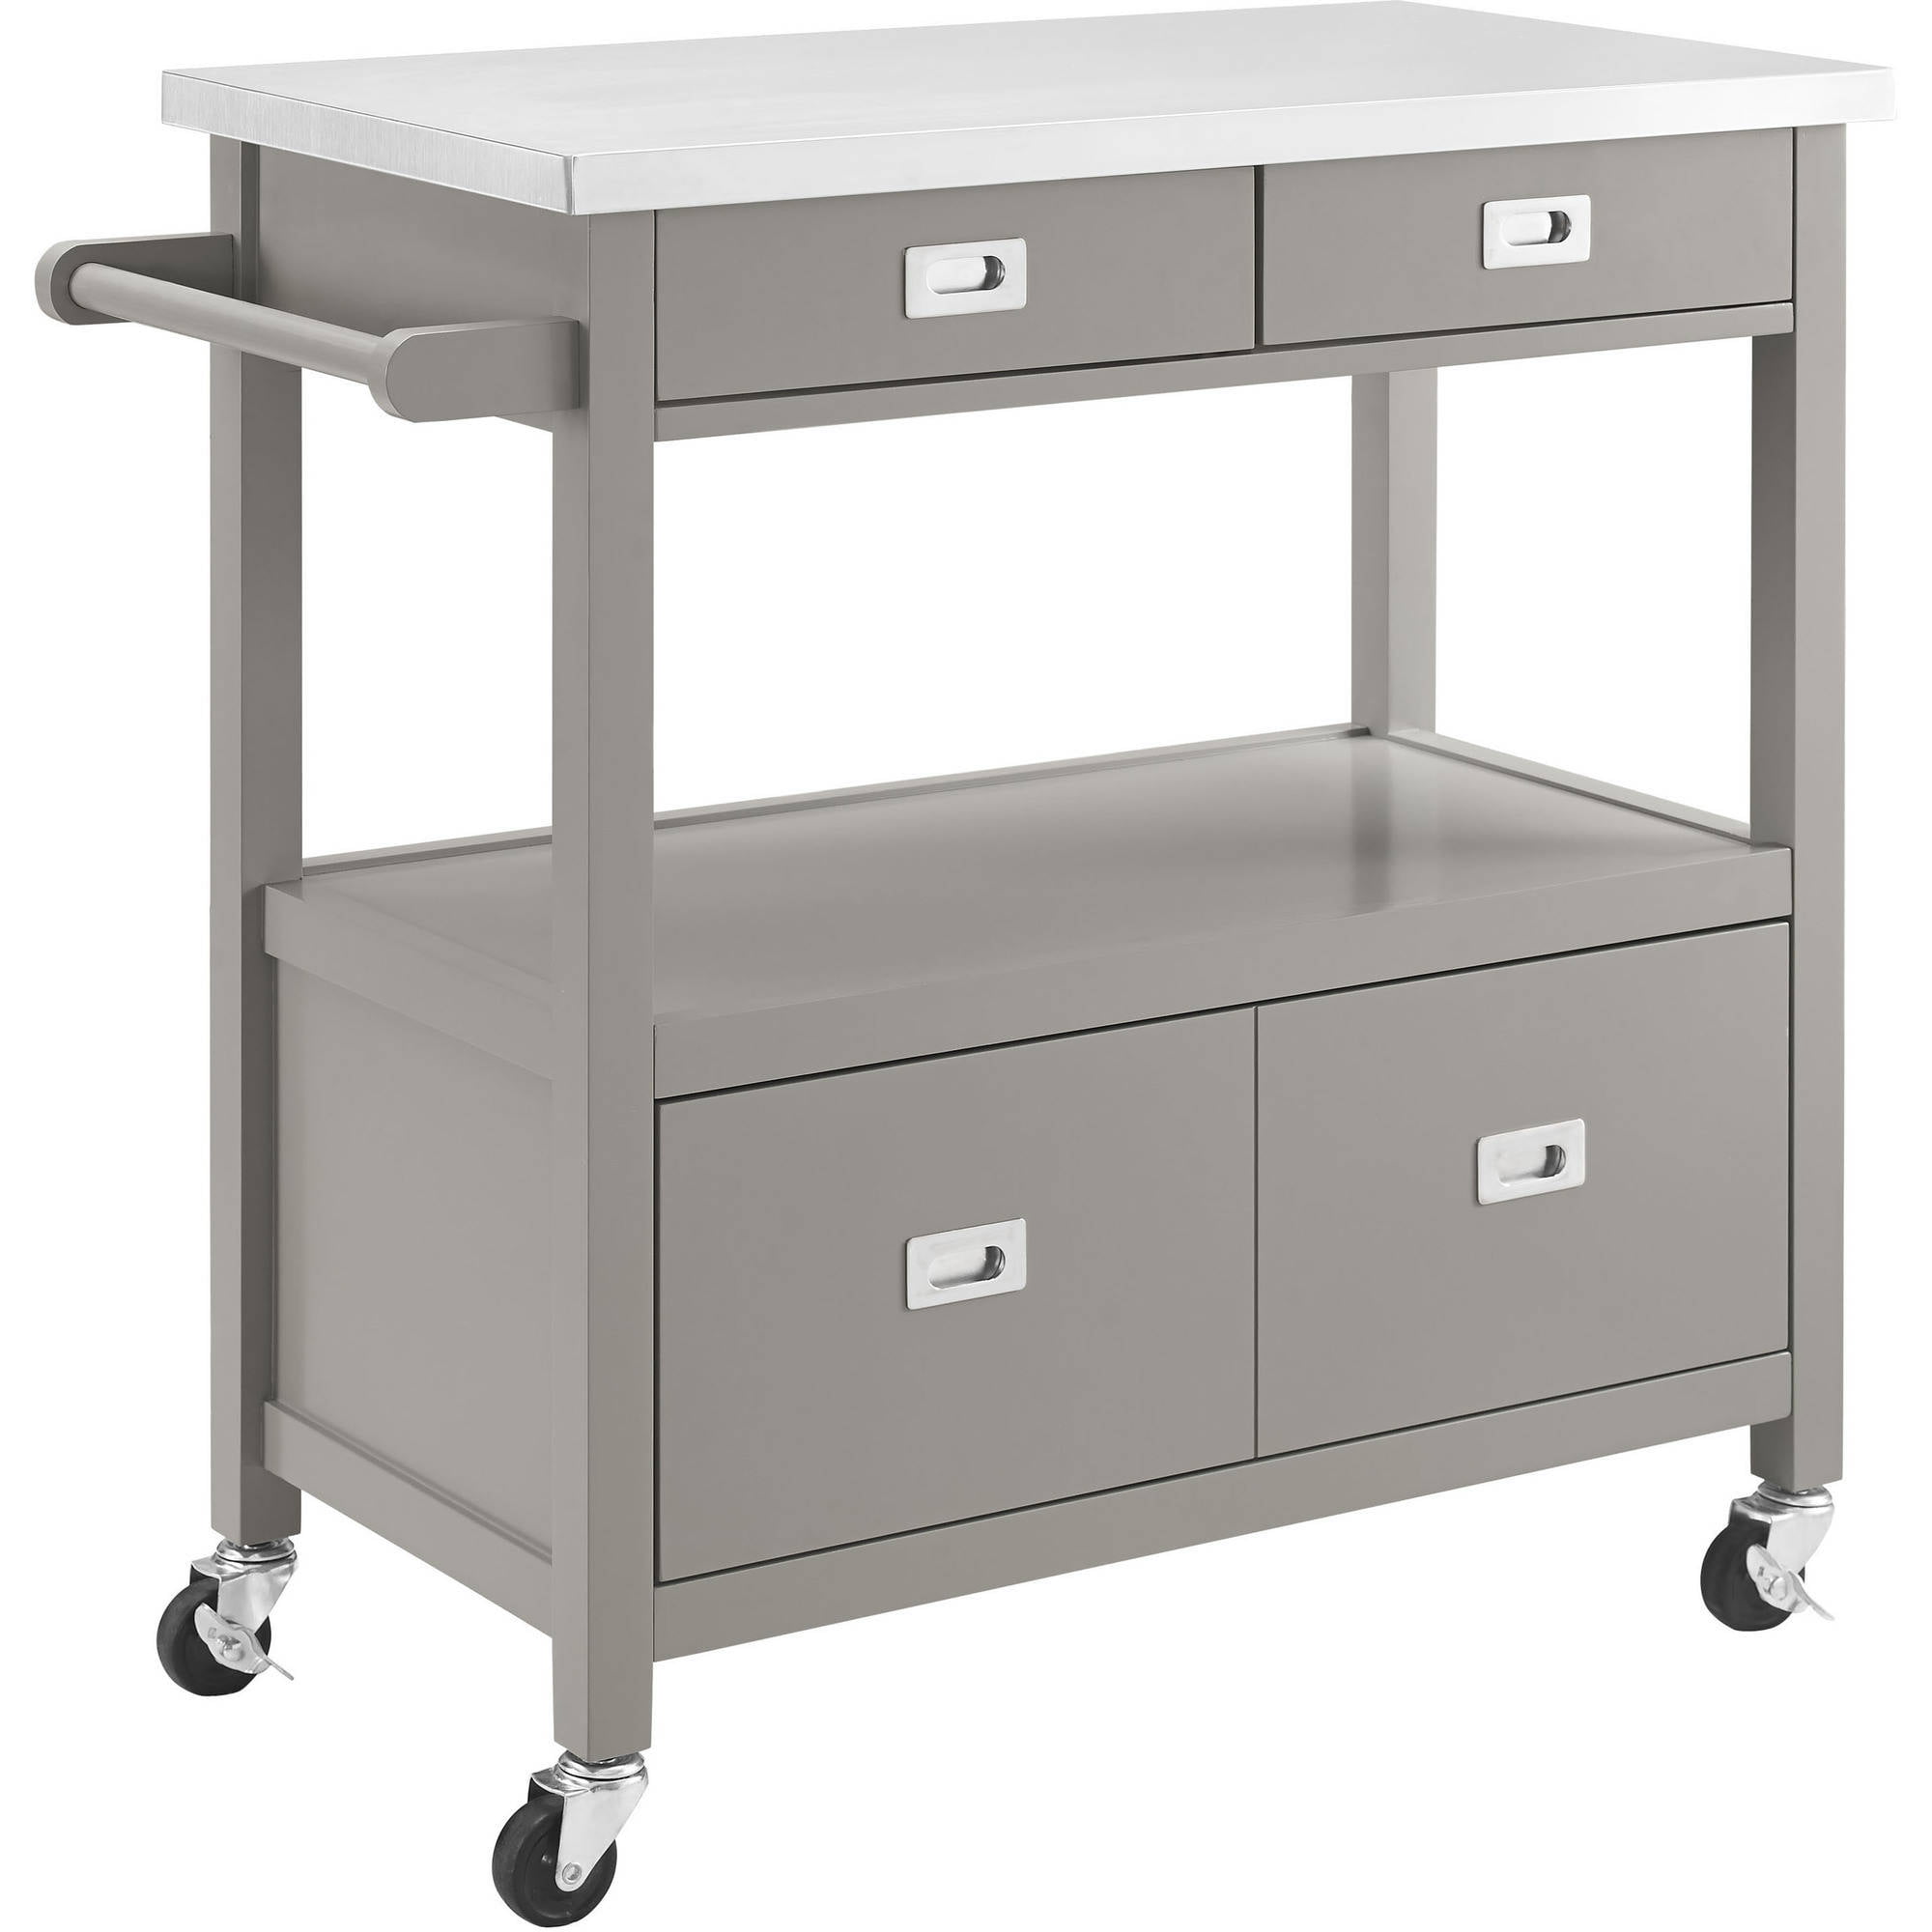 Linon Sydney Kitchen Cart, Gray, Stainless Steel Top, 4 Drawers Kitchen Cart Stainless Steel Top